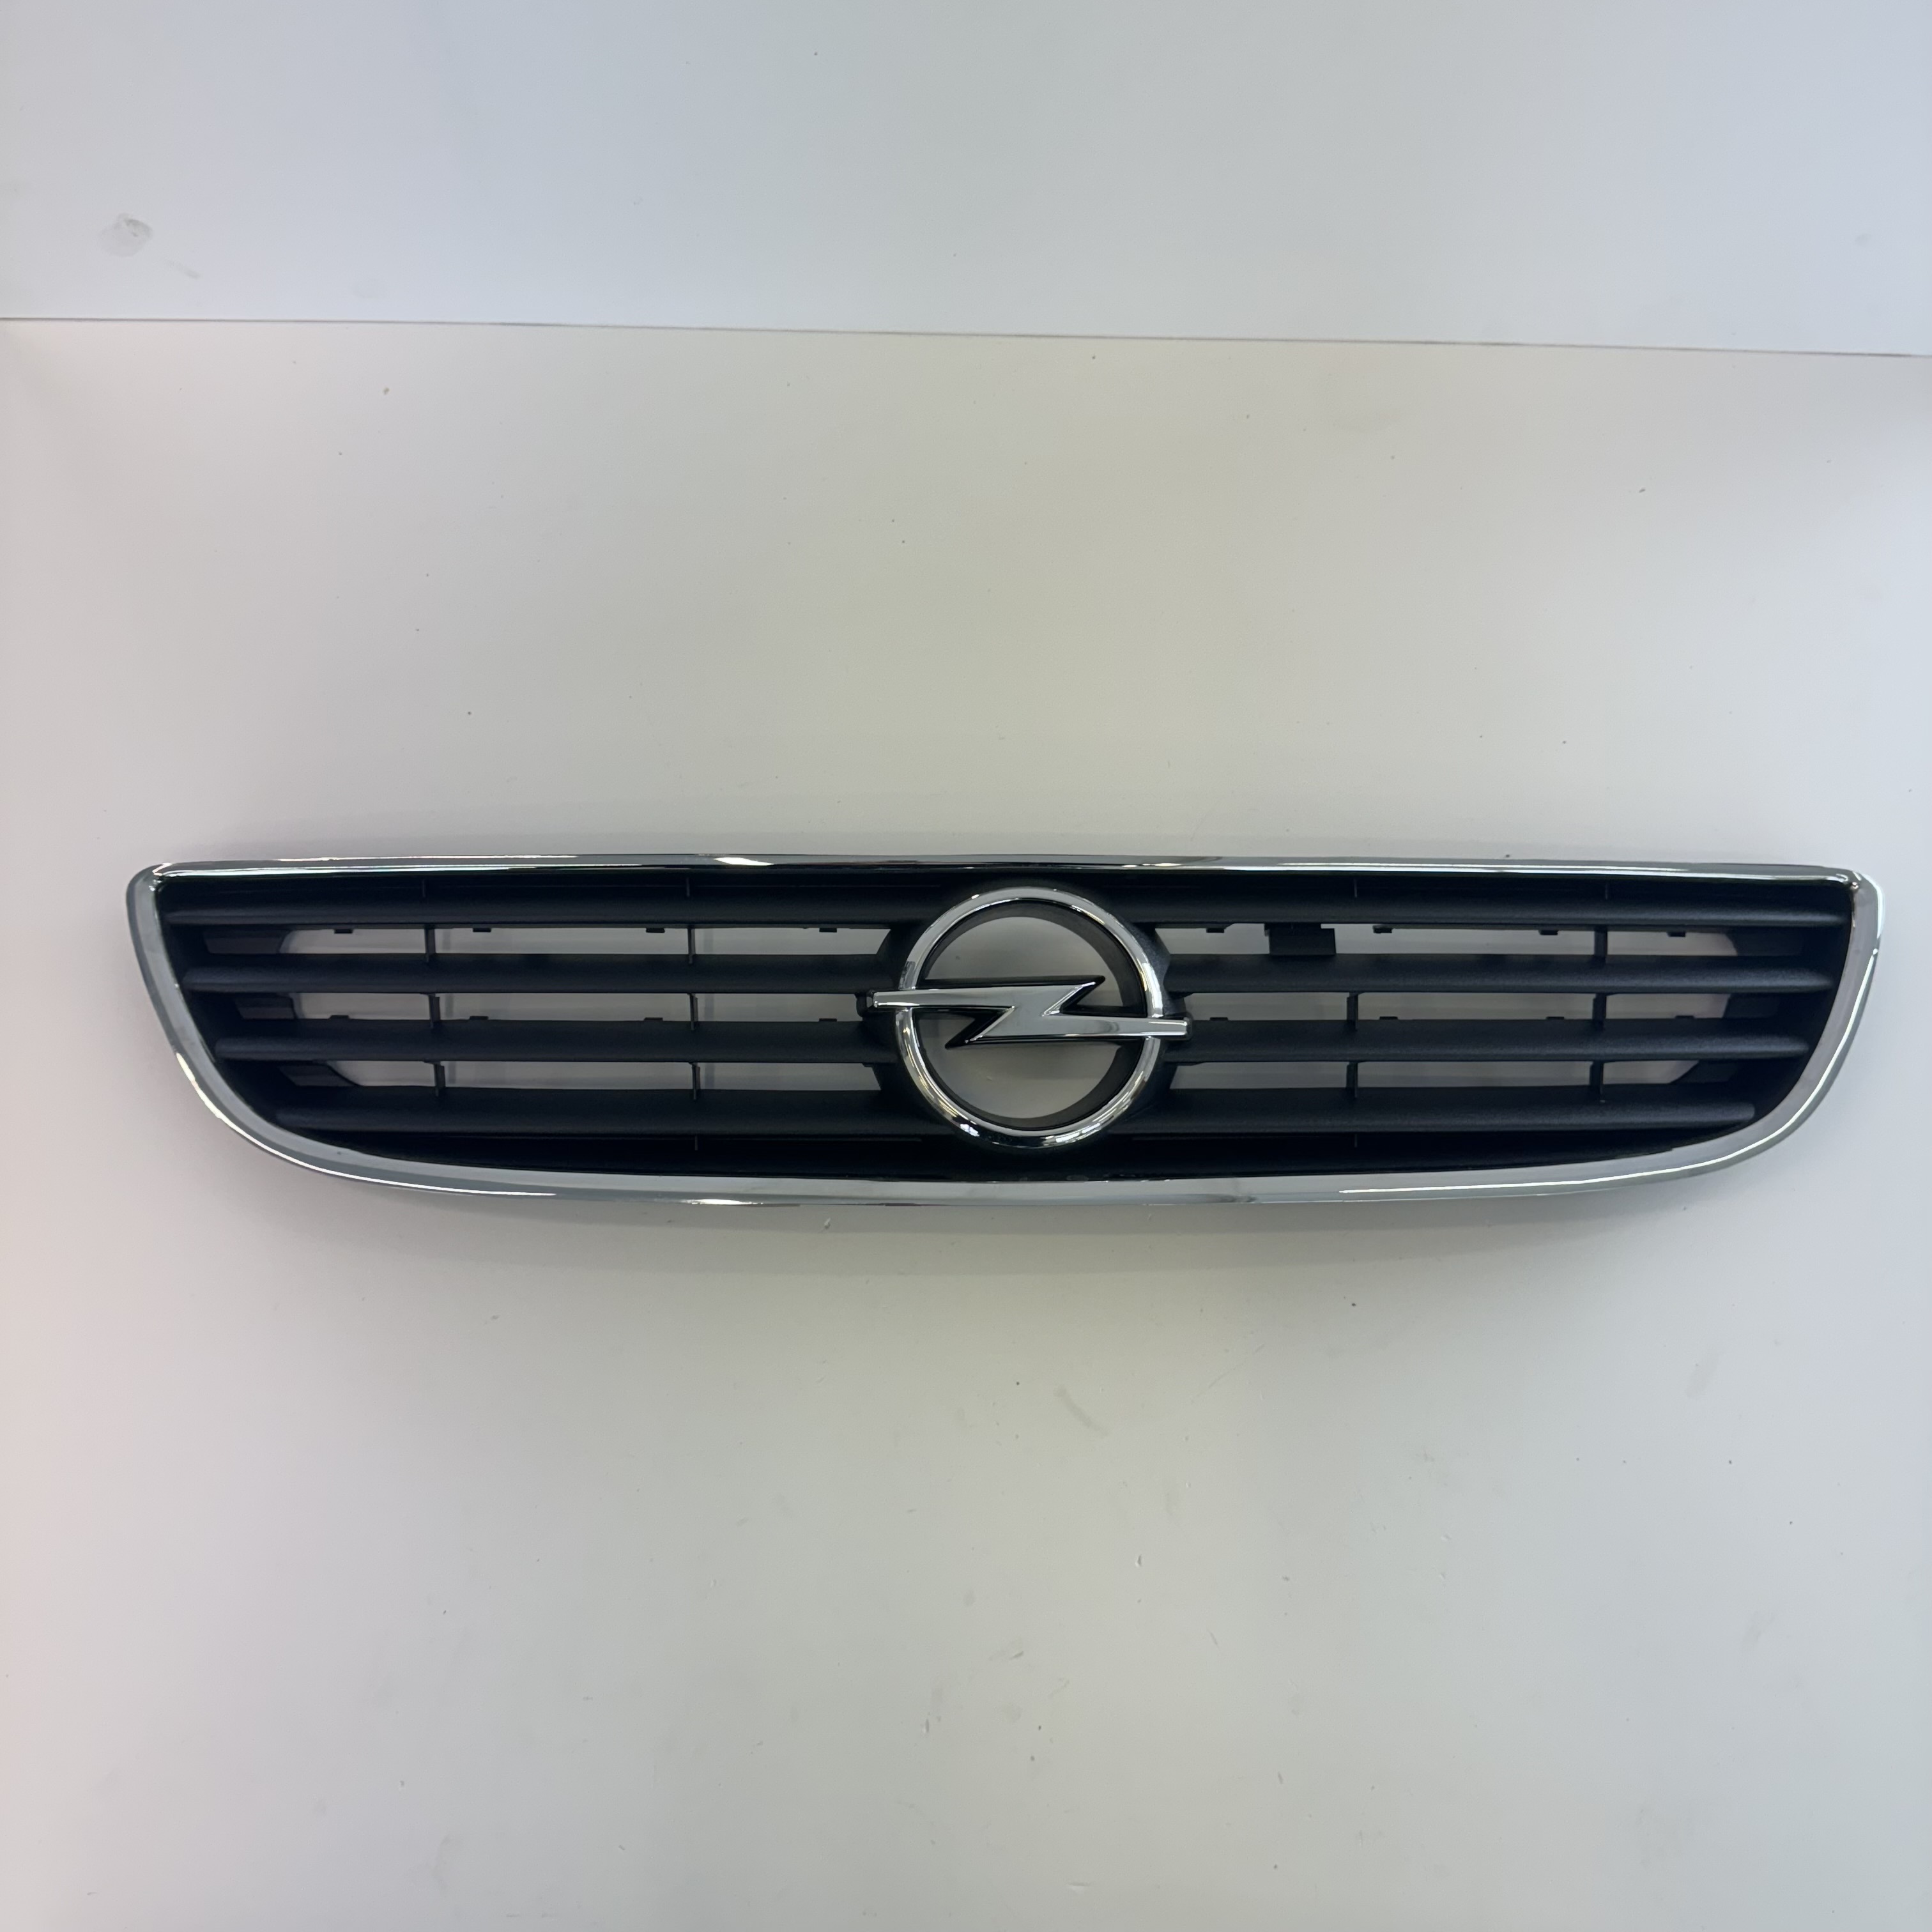 Opel Astra G / Zafira A - Hűtőrács díszléccel és emblémával (9118342)